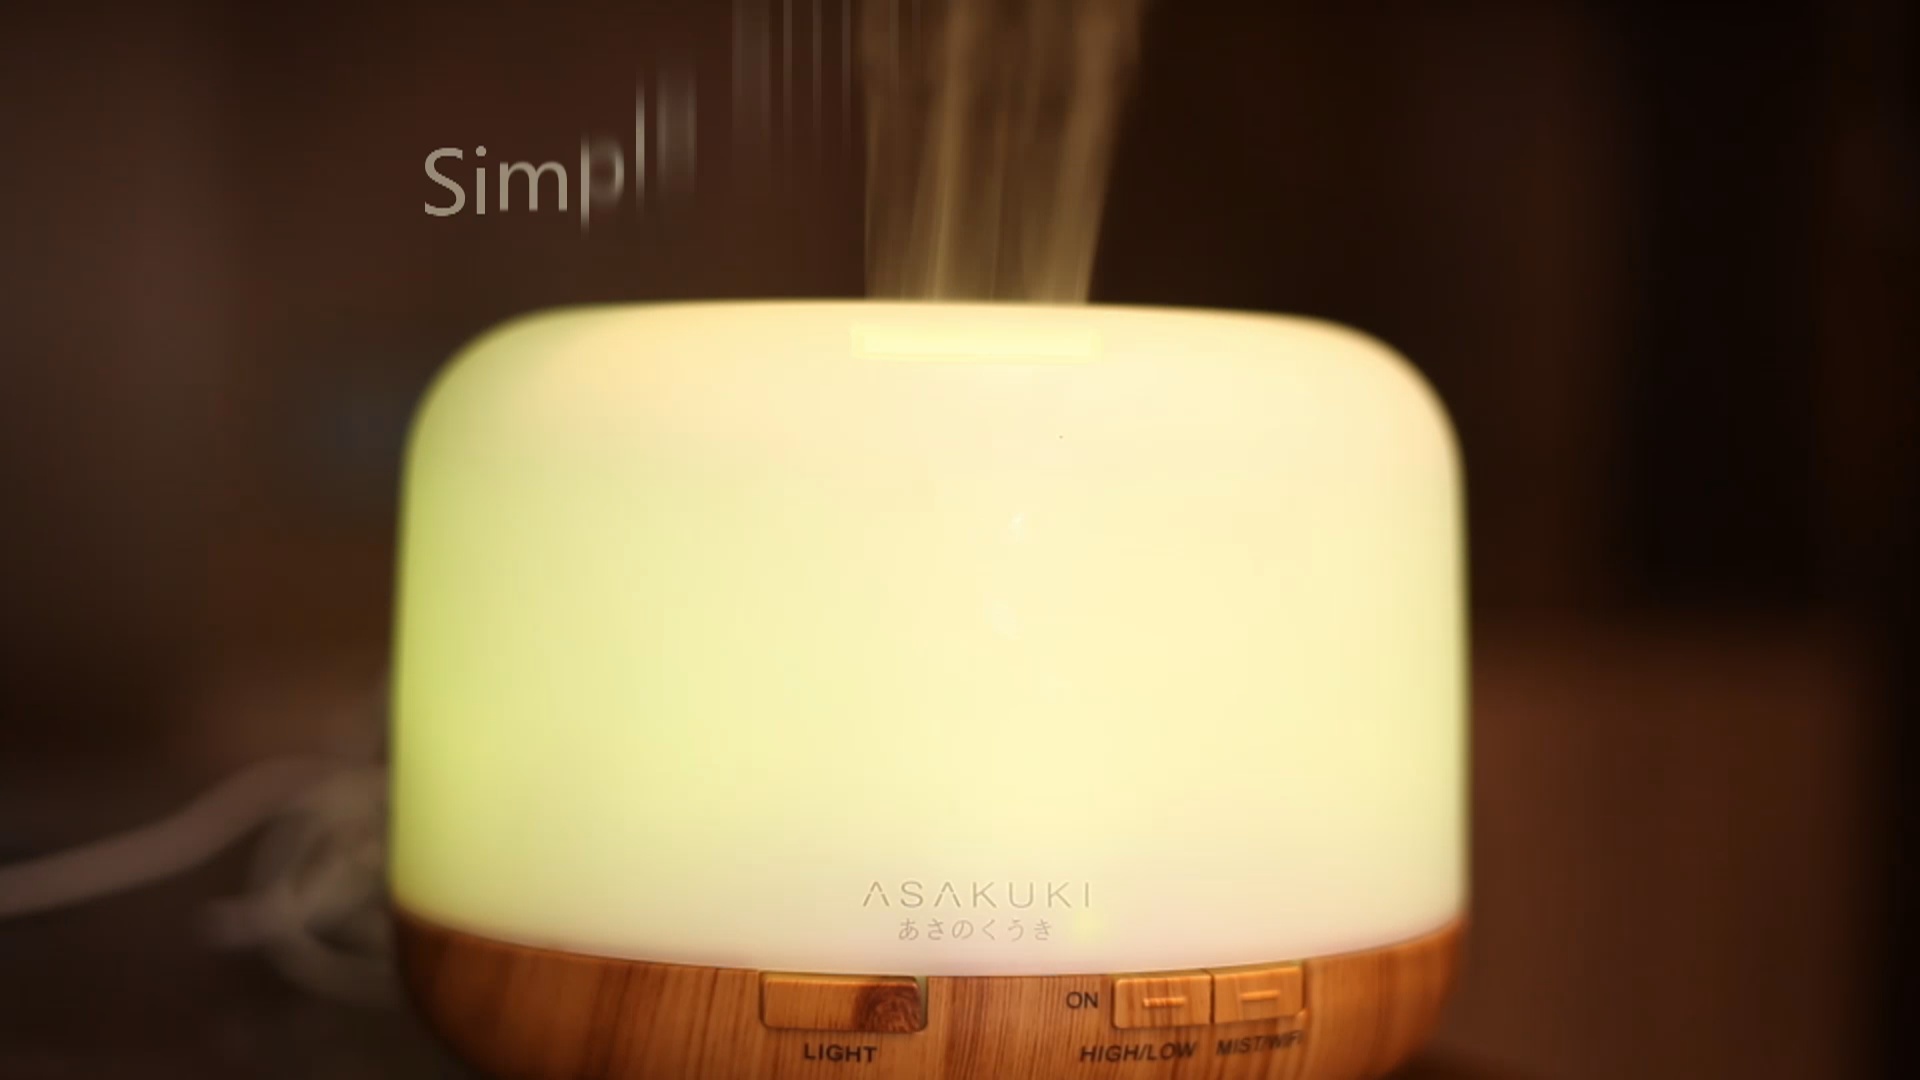 ASAKUKI加湿器Wifi智能语音控制香薰机亚马逊电商视频拍摄